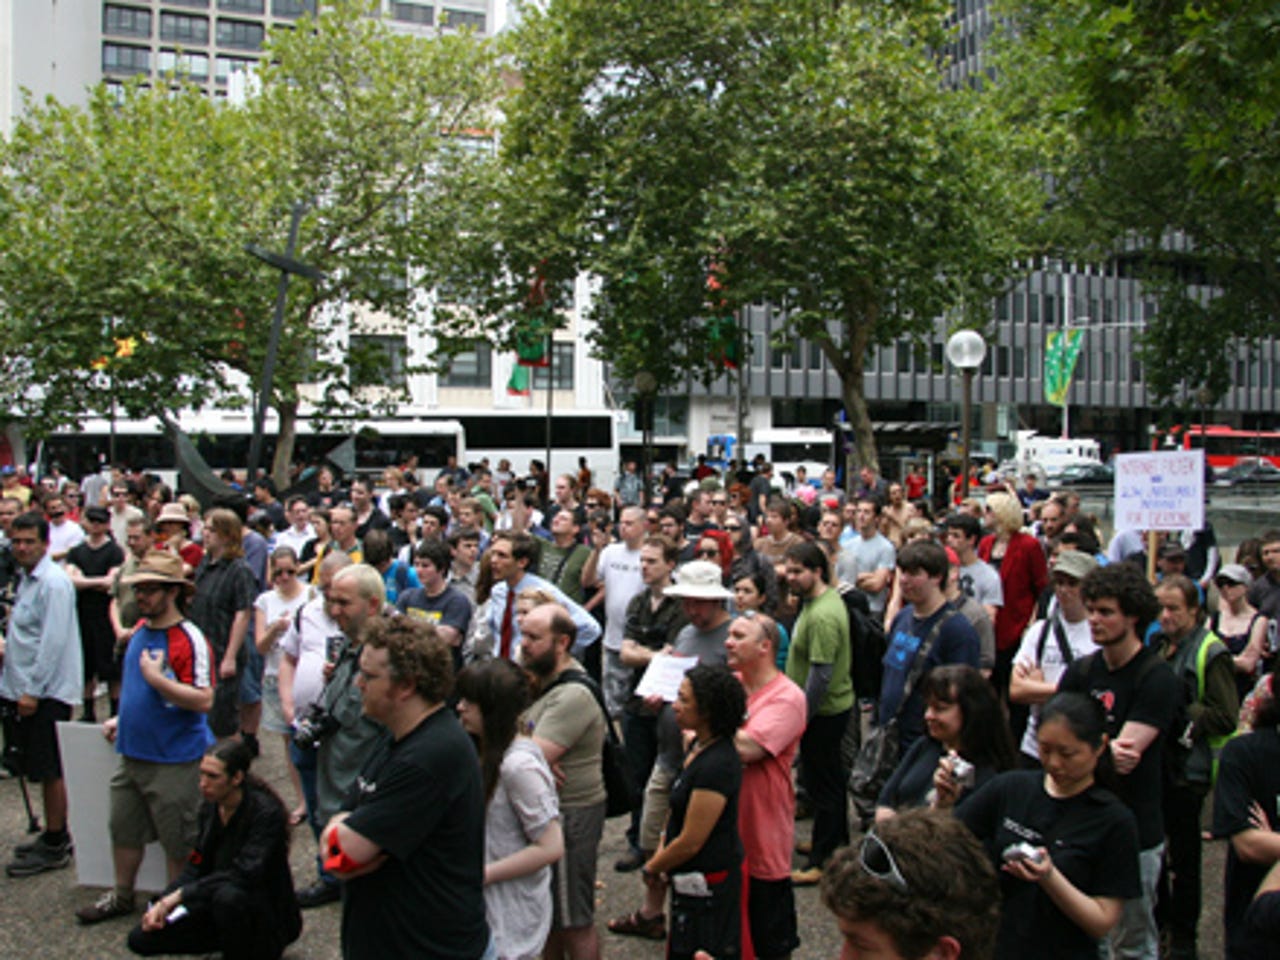 photos-sydneysiders-protest-internet-filtering7.jpg